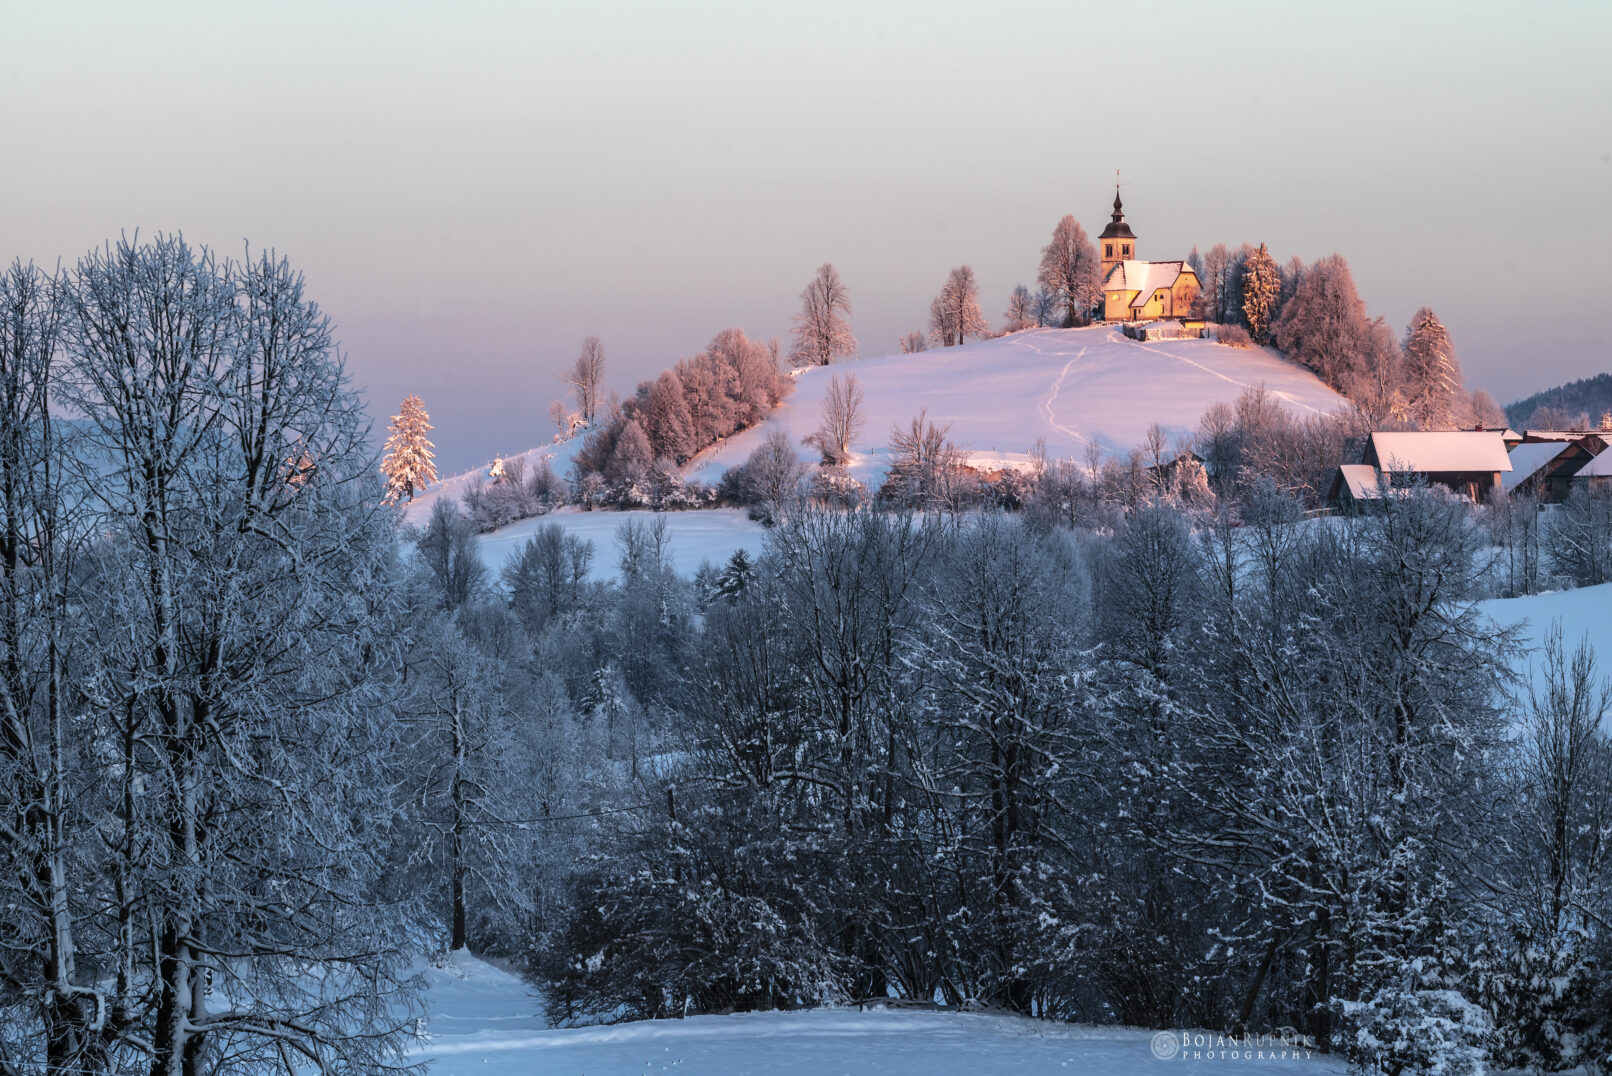 Zimsko jutro s zasneženo pokrajino in cerkvico na hribu